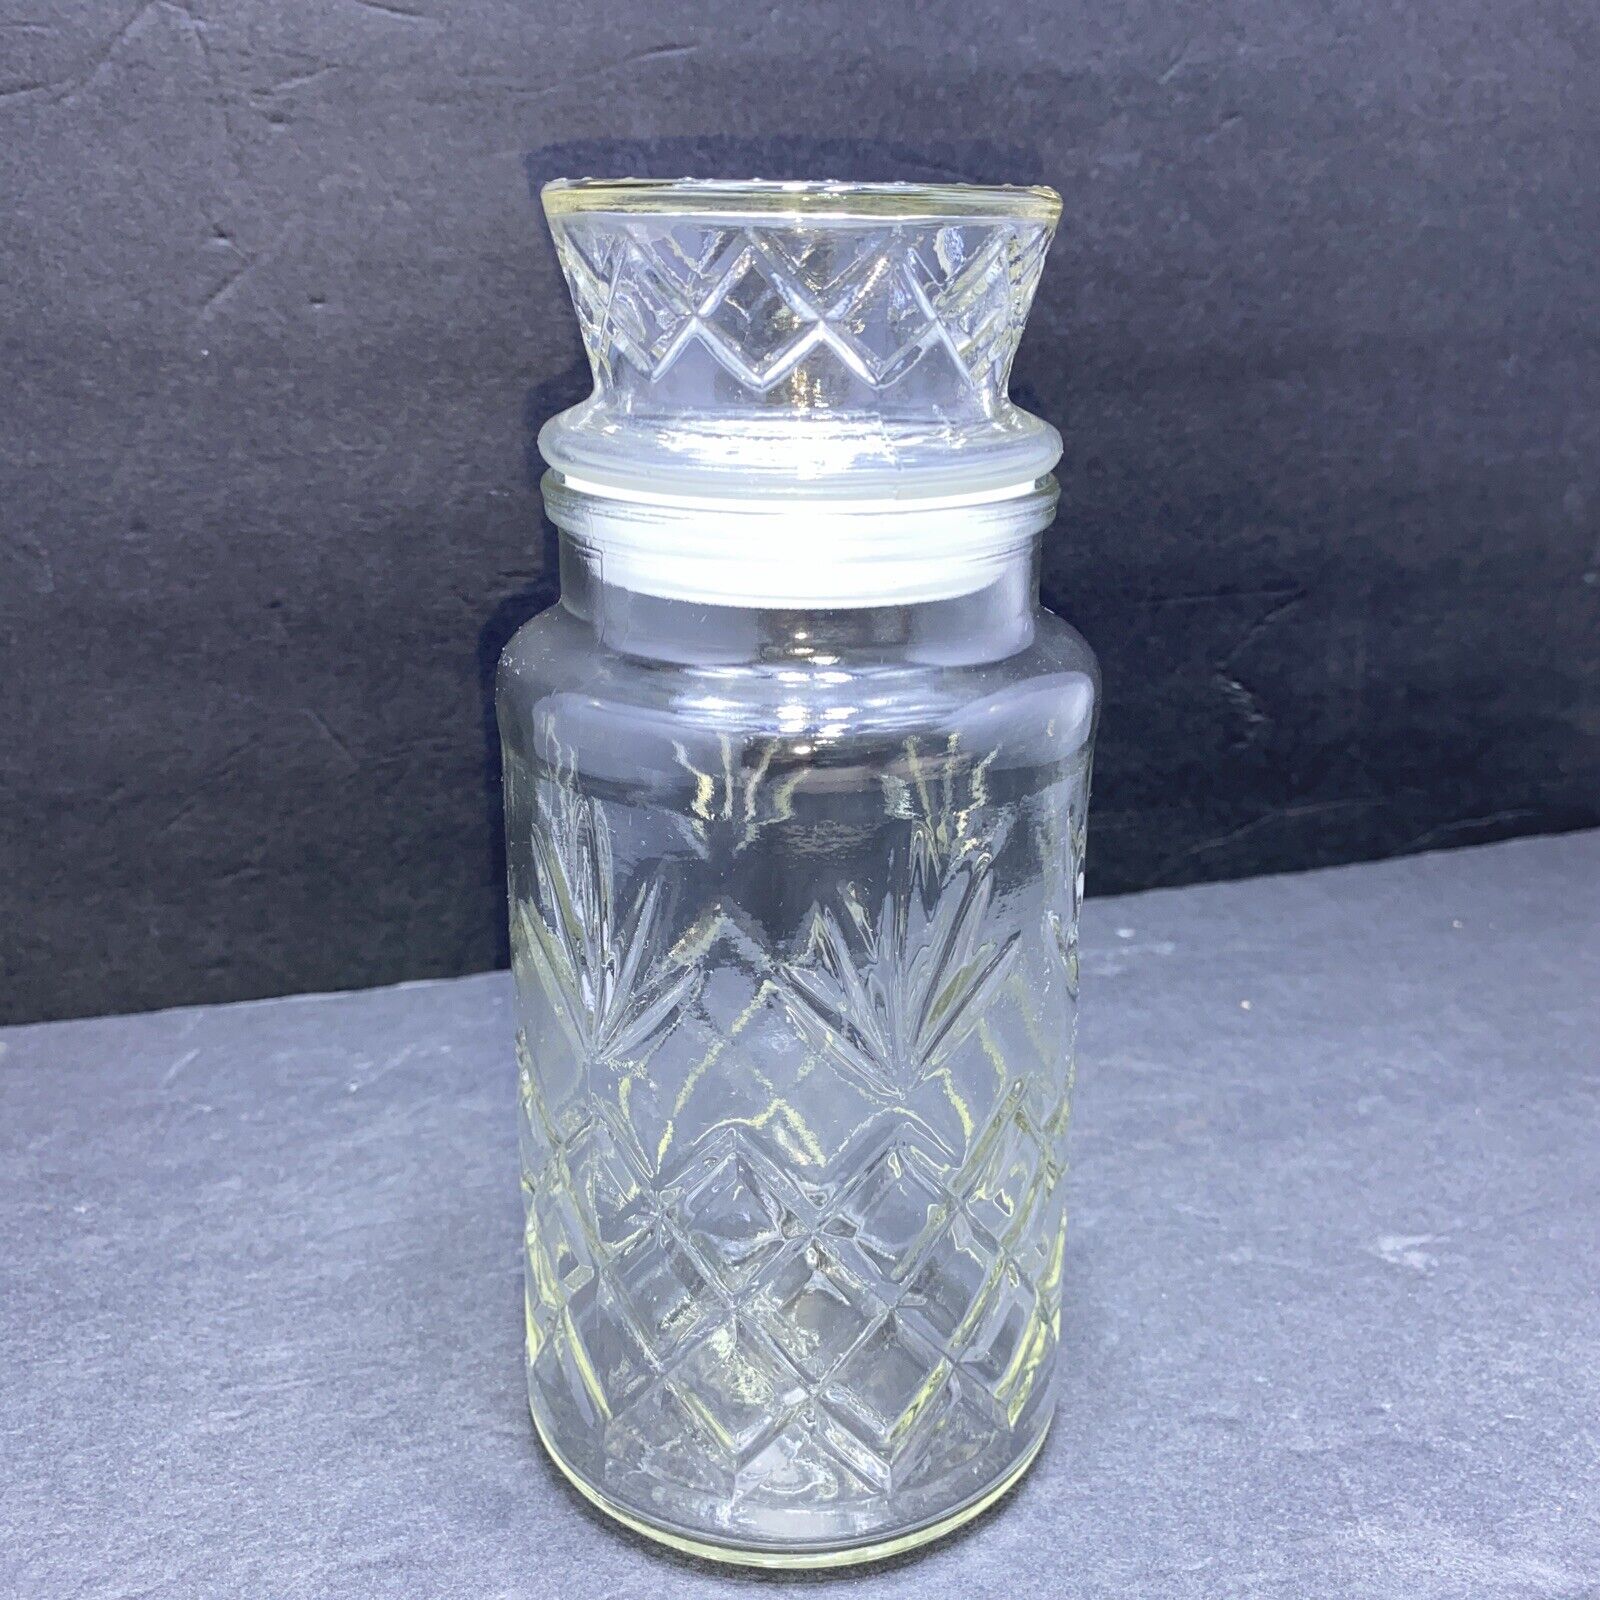 VINTAGE PLANTERS PEANUT MR PEANUT 1983 GLASS JAR CANISTER DIAMOND PINEAPPLE